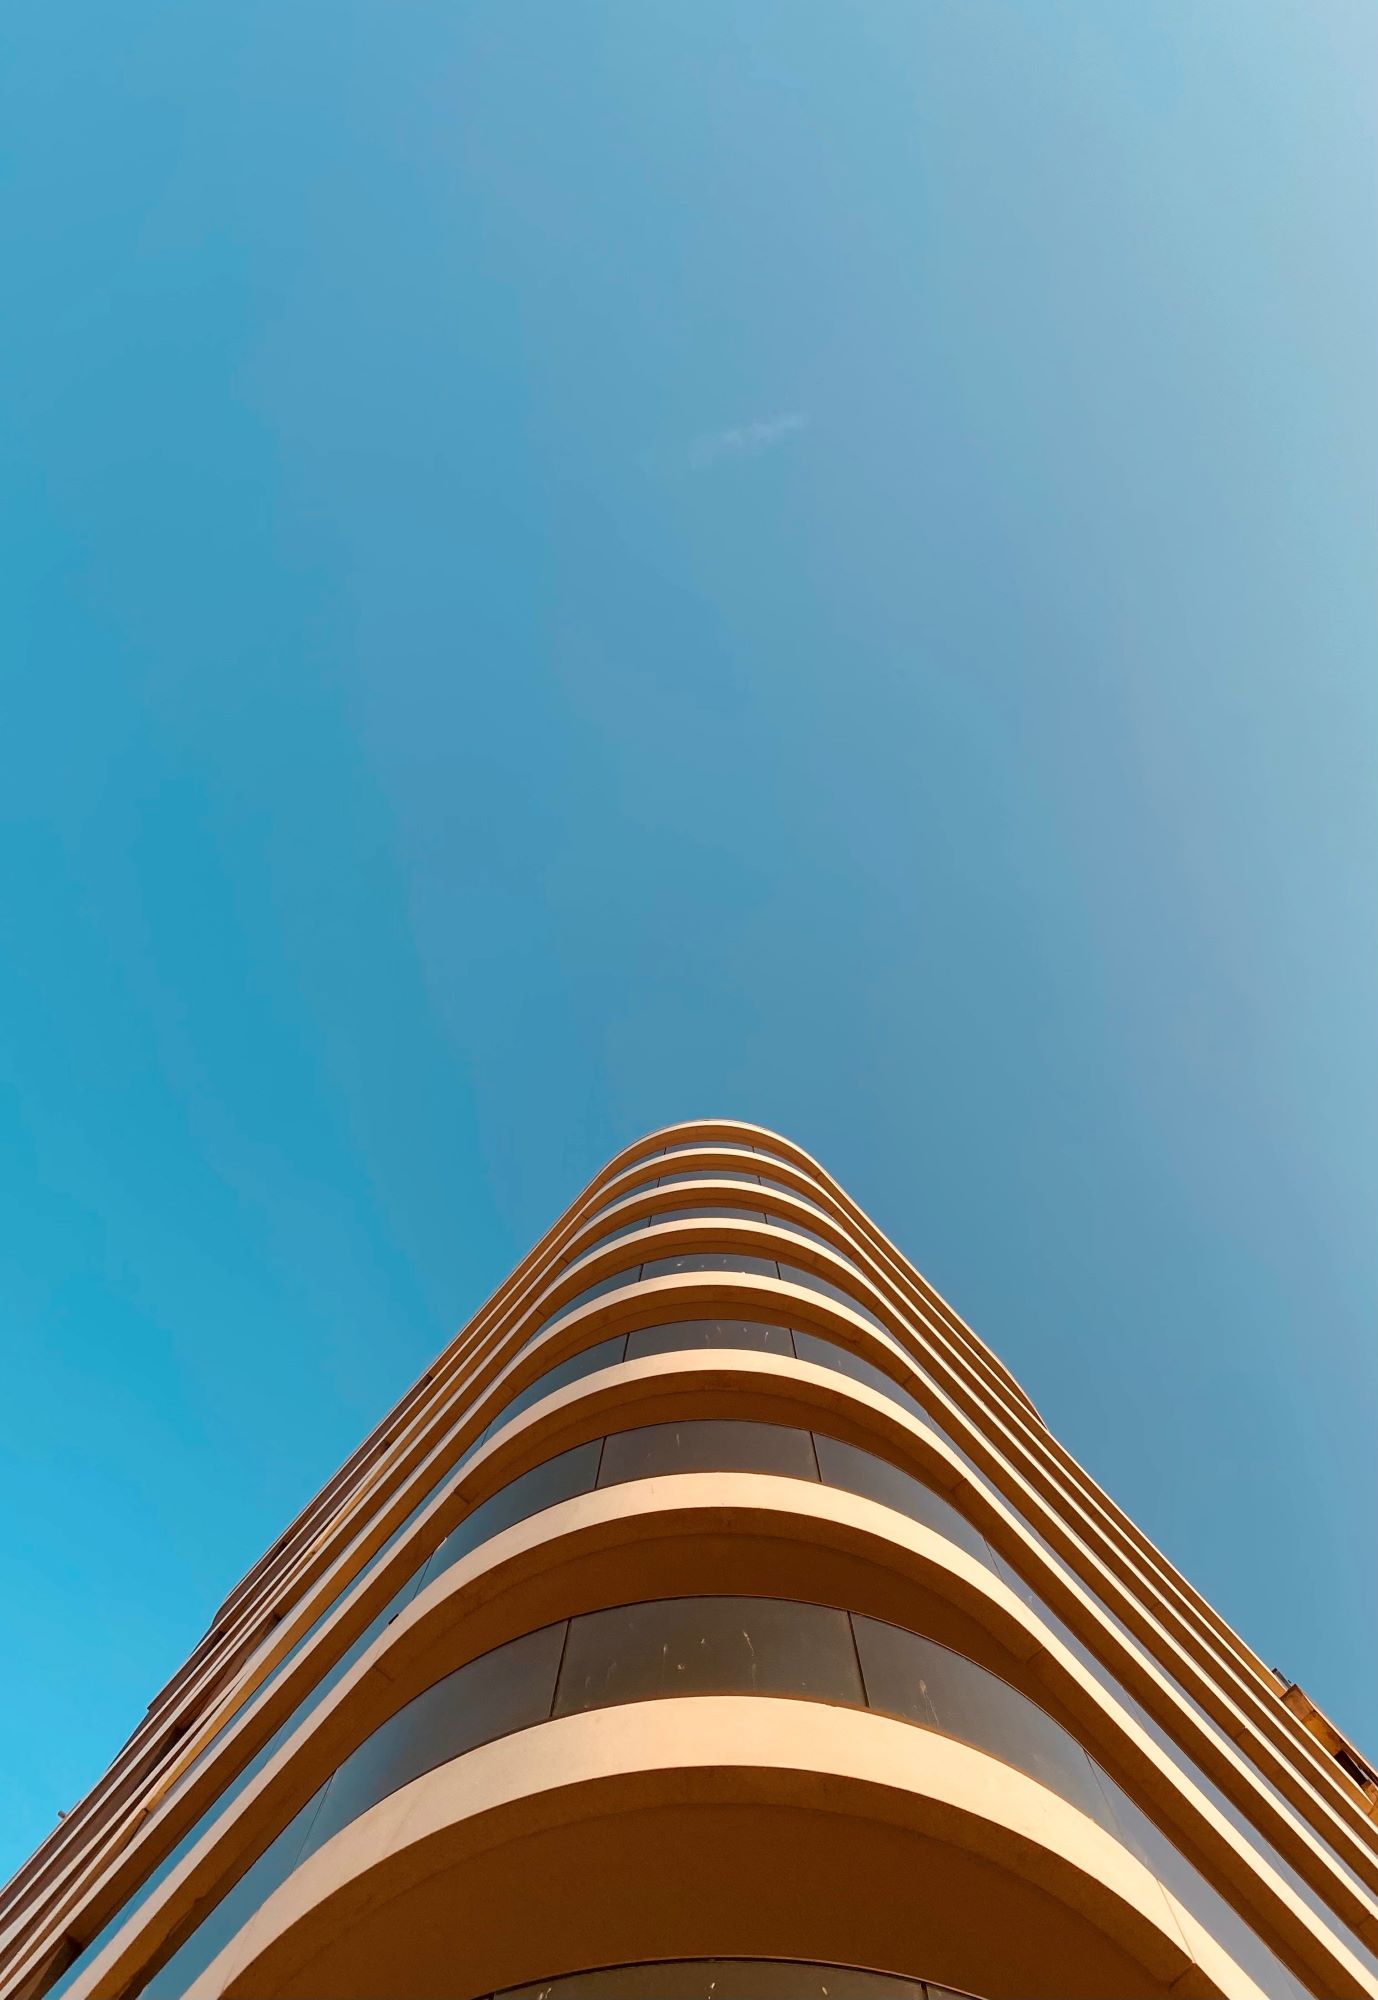 Strahlend blauer Himmel und das angeschnittene Dach eines oval verlaufenden Hauses